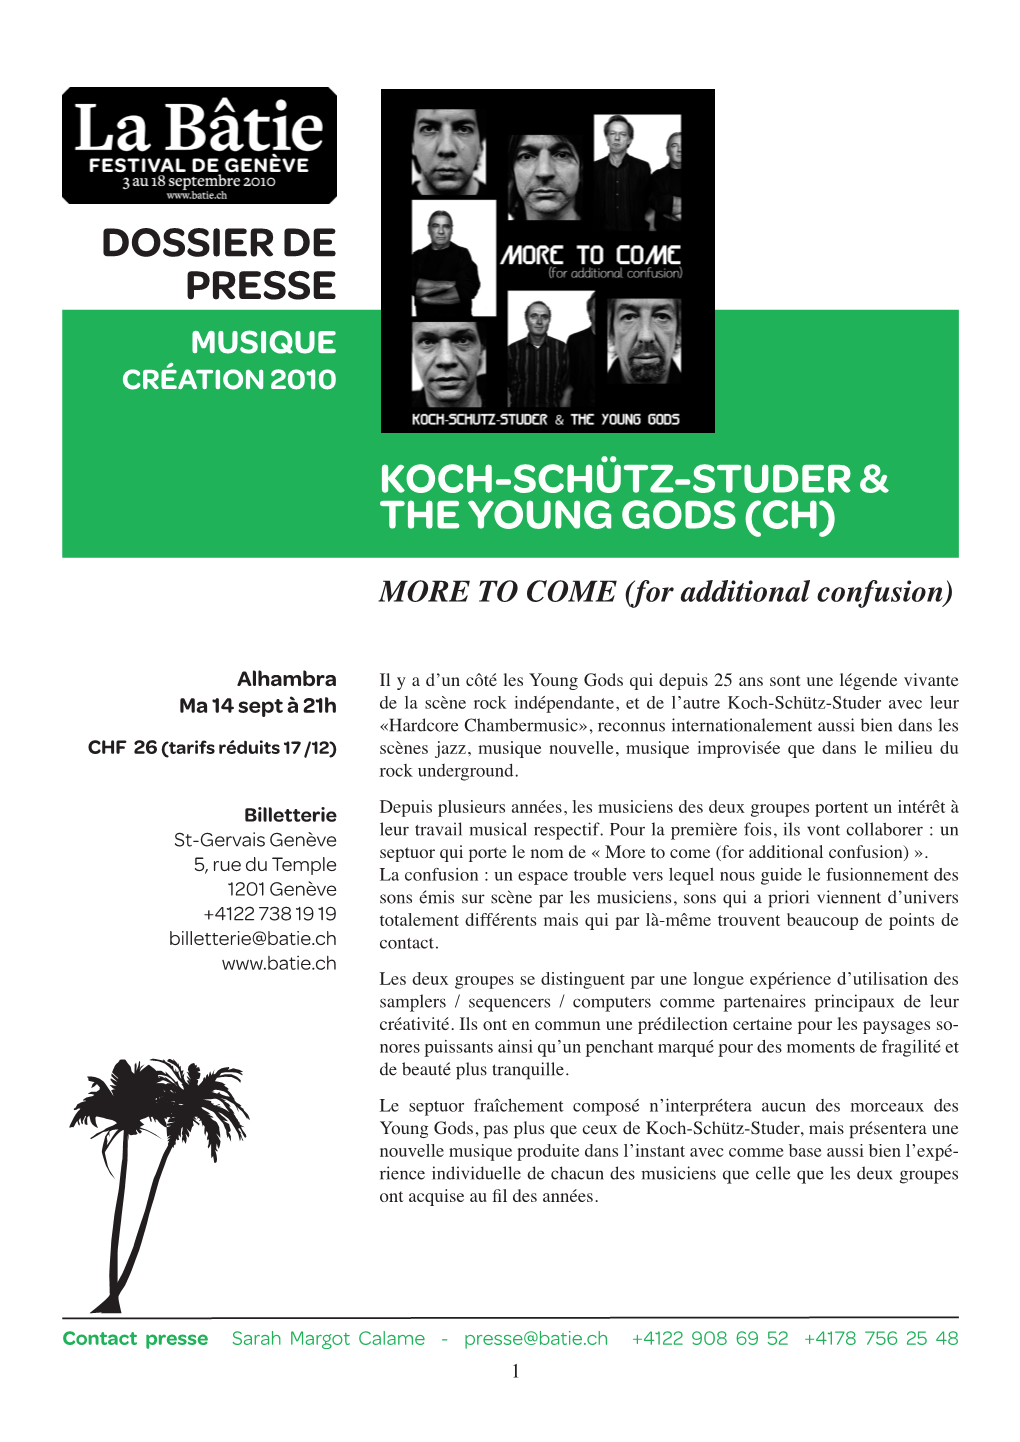 Koch-Schütz-Studer & the Young Gods (Ch) Dossier De